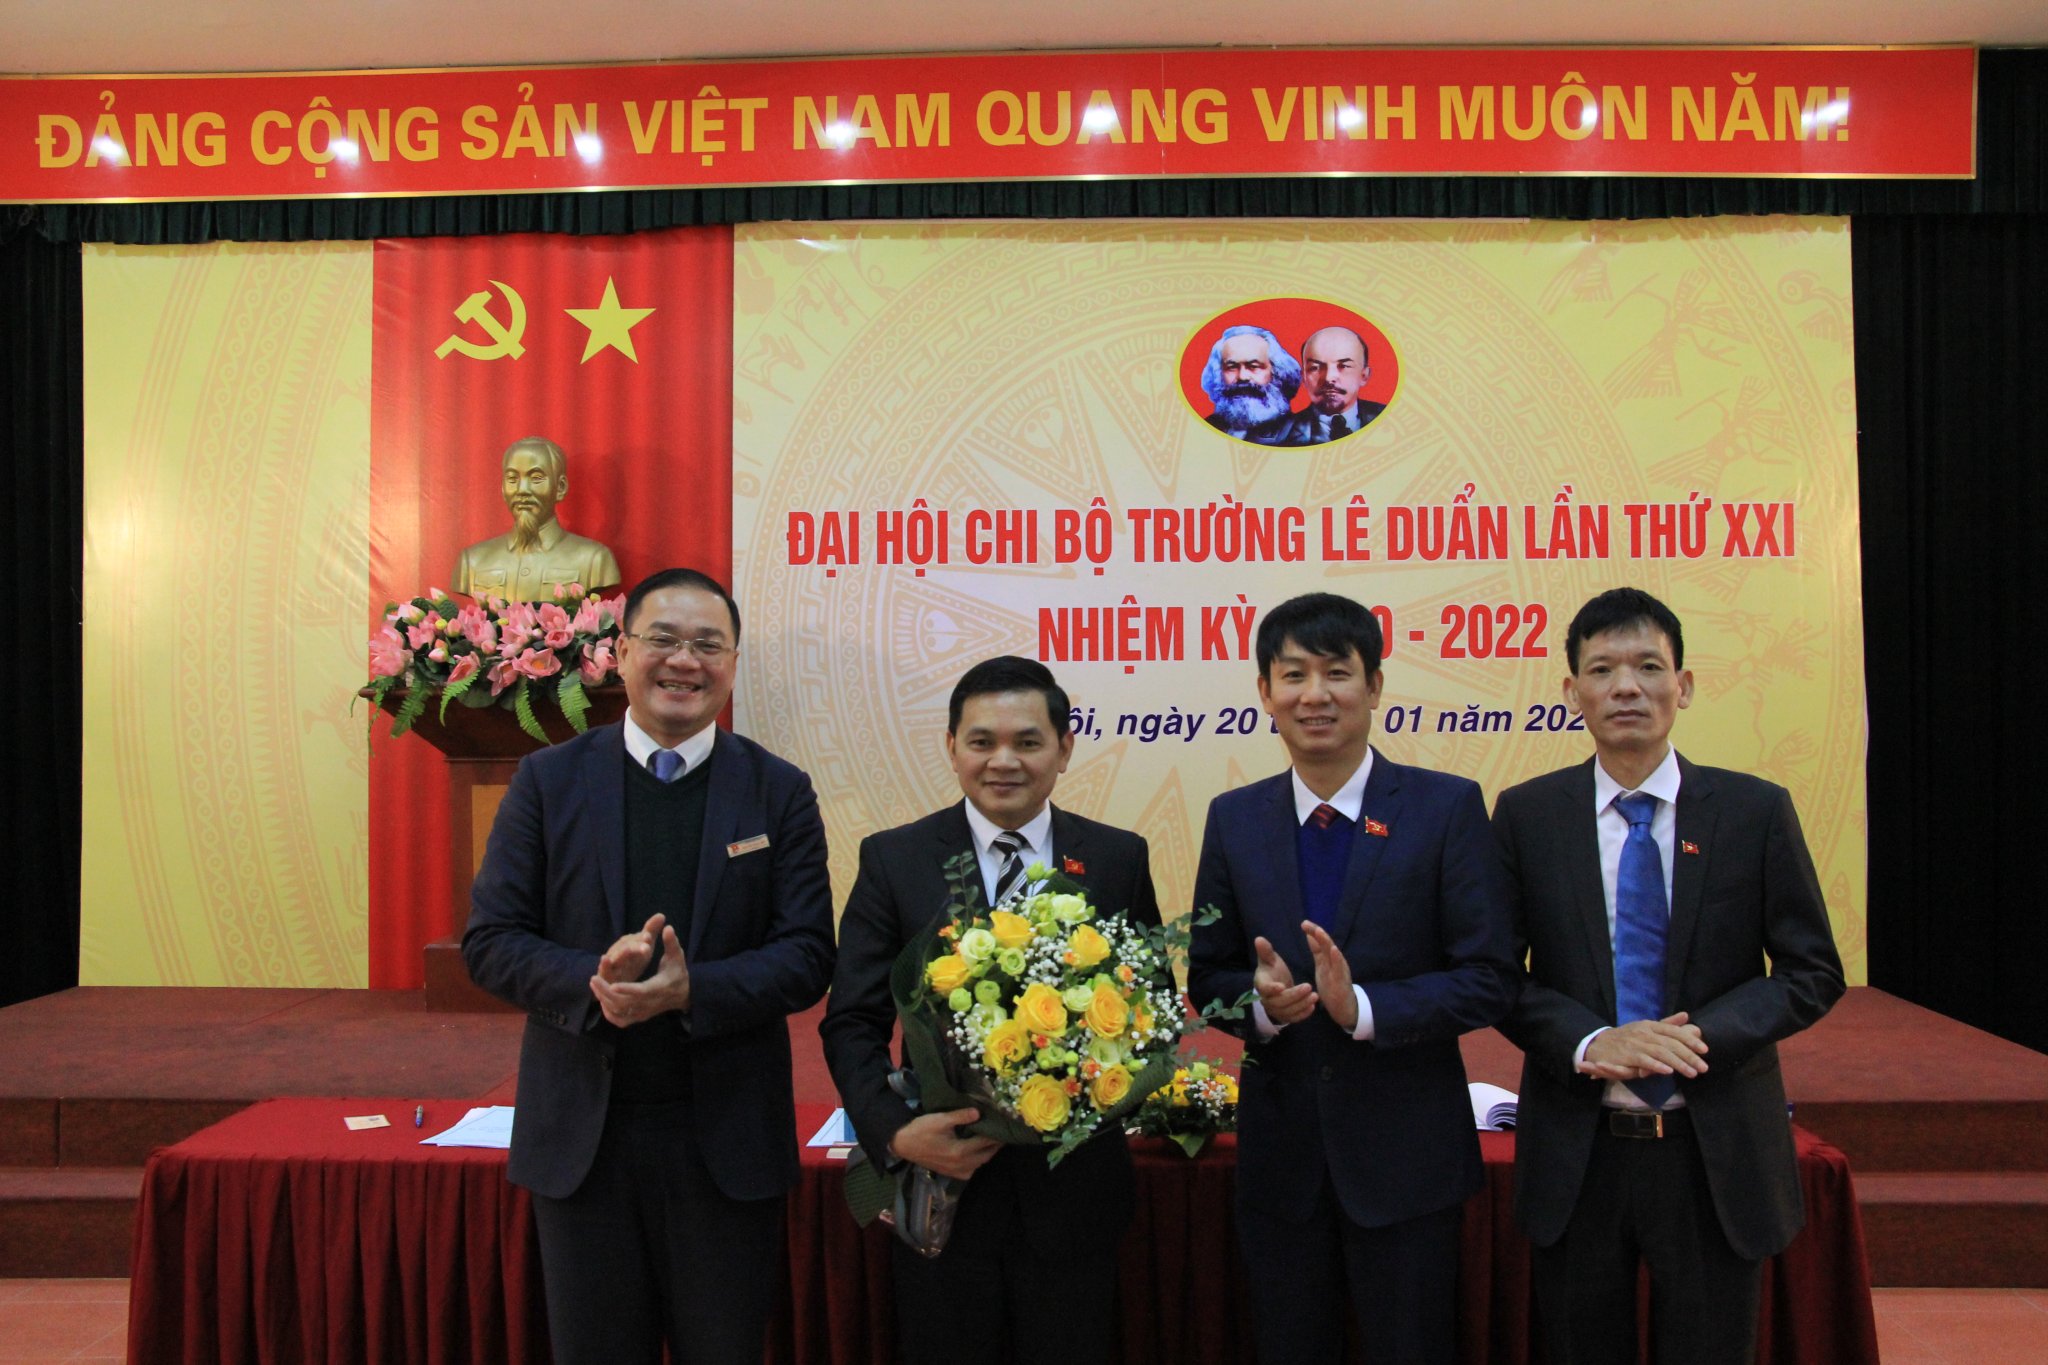 Đồng chí Nguyễn Thứ Mười tái đắc cử Bí thư Chi bộ trường Lê Duẩn